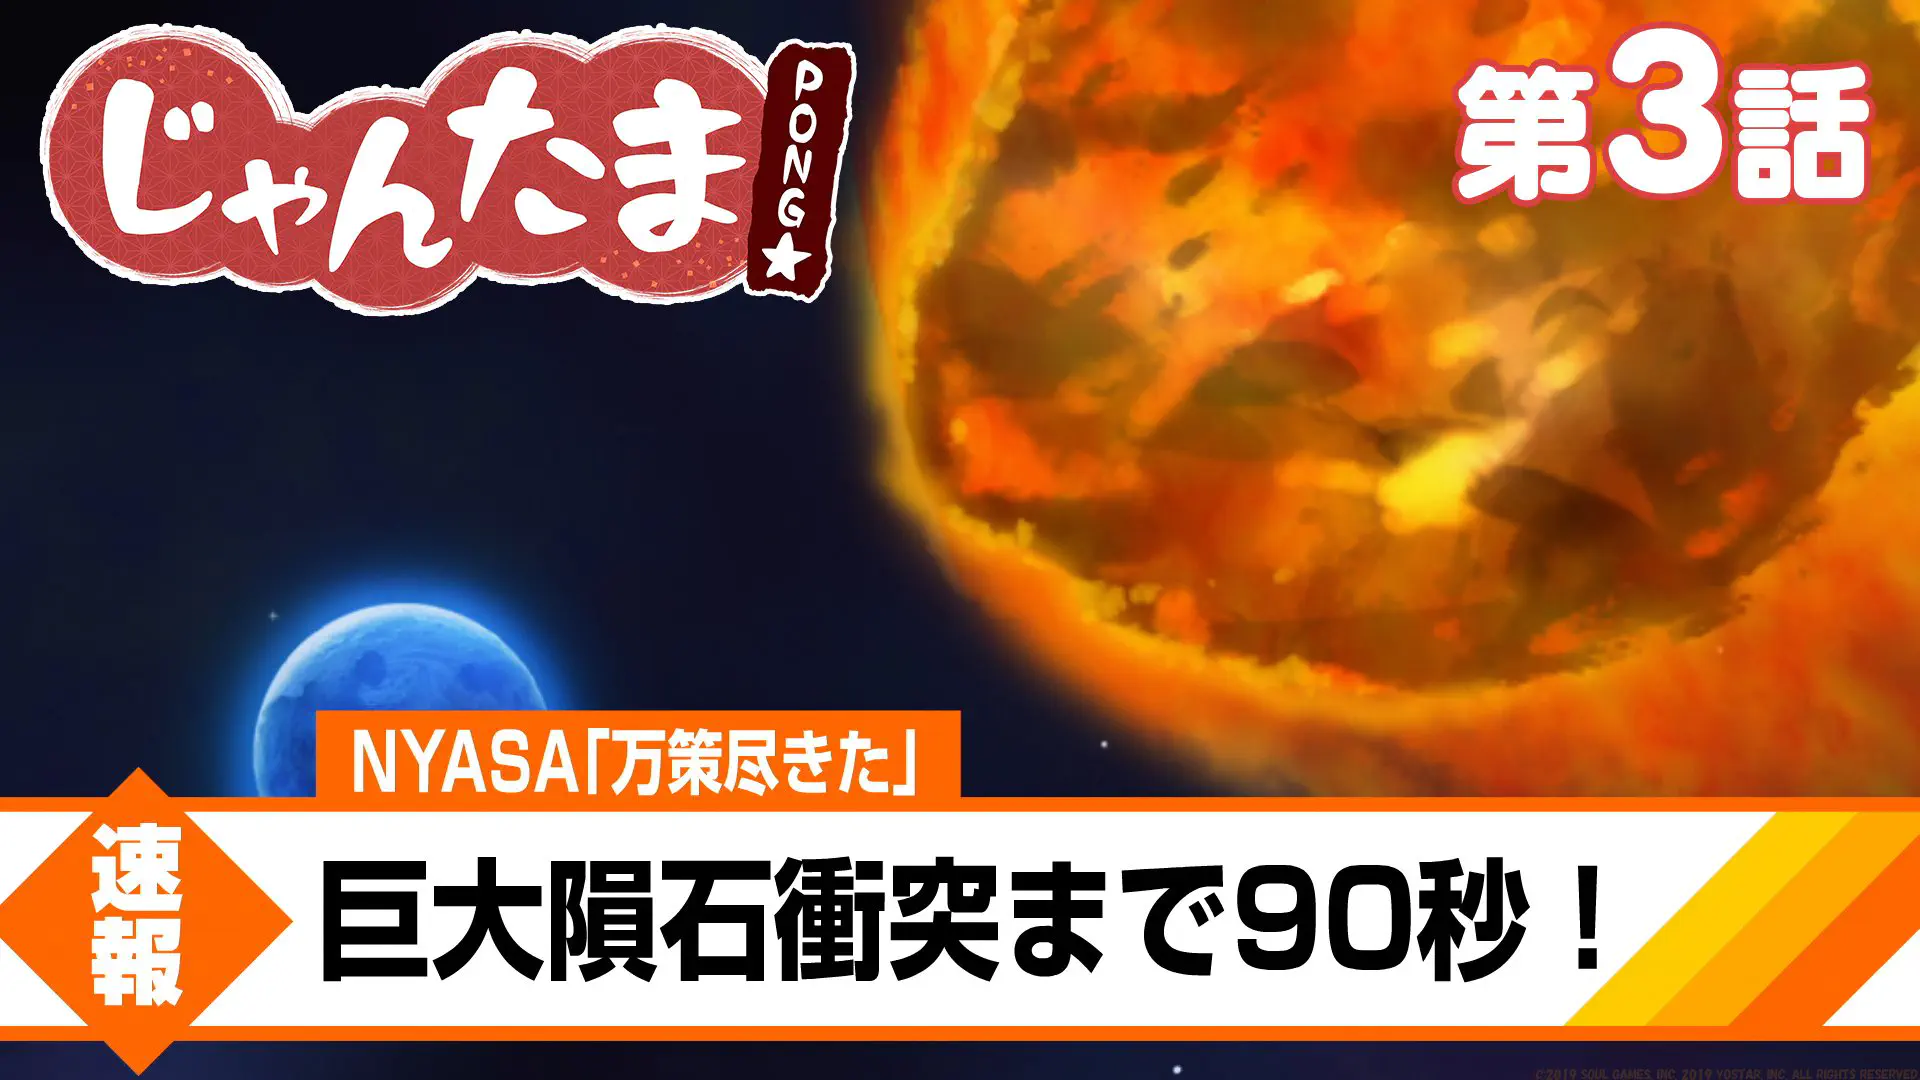 【TVアニメ】じゃんたま PONG☆ 【3話】「巨大隕石襲来にゃ」